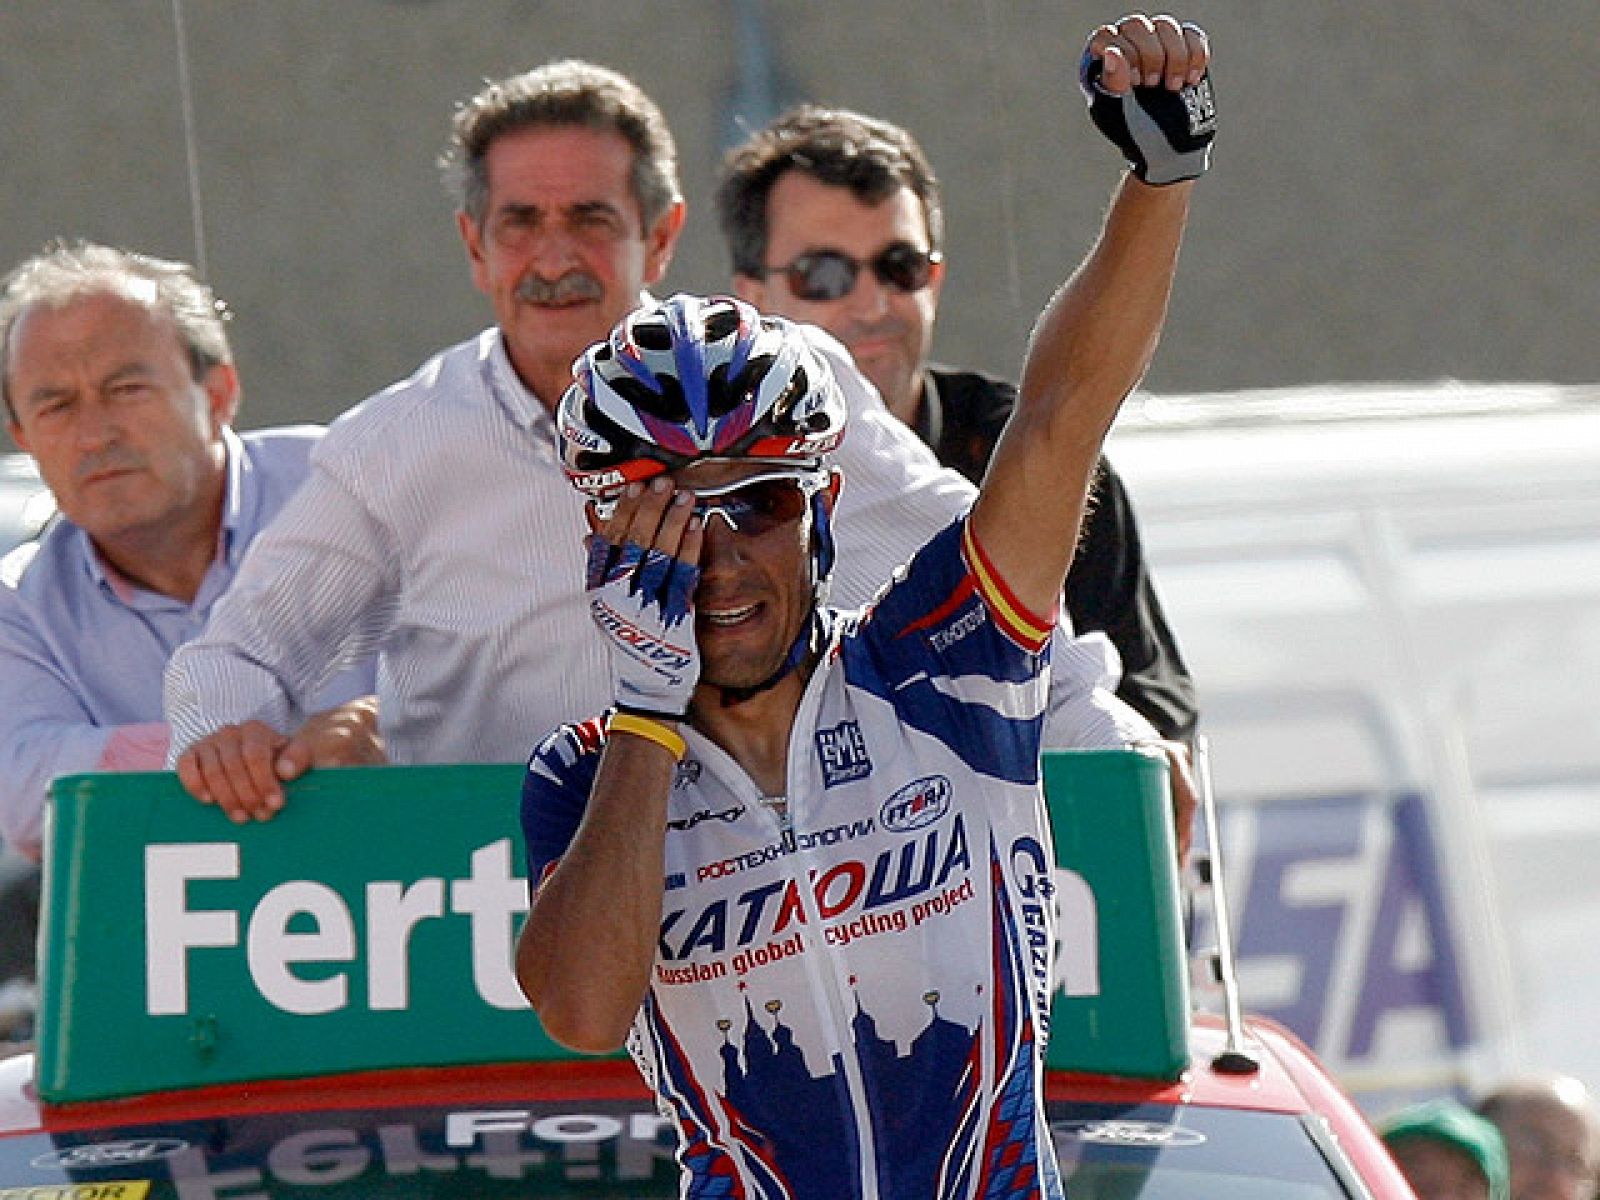 La caída de Igor Antón ha sido lo más destacado. Su abandono causó que hubiera cambio de líder en la Vuelta.